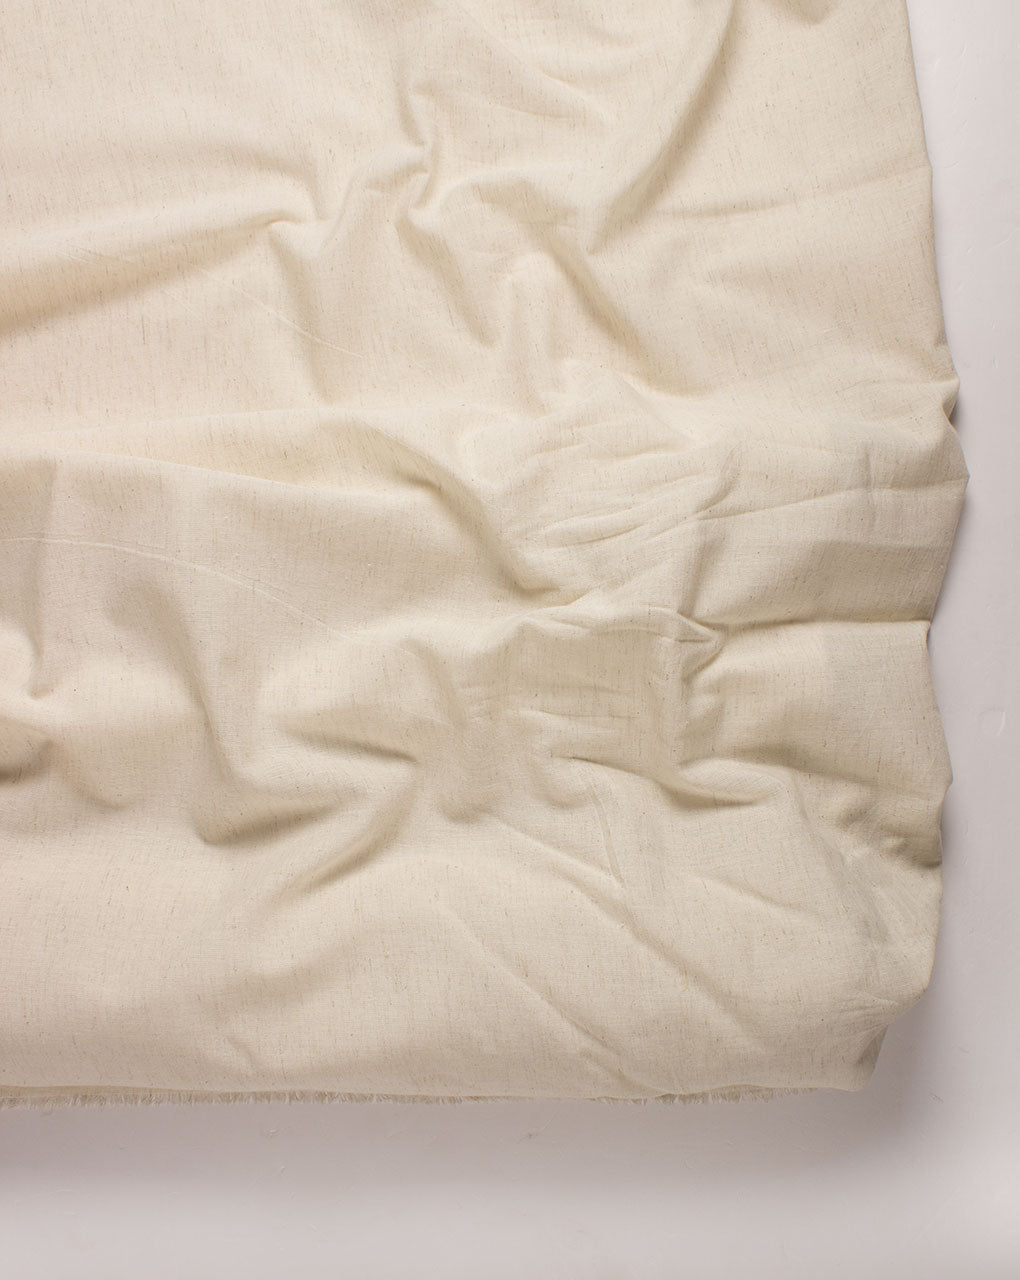 2/40’S Cot x 20’S C/Flex (56 x 44) Cotton Flex Plain Fabric - Fabriclore.com